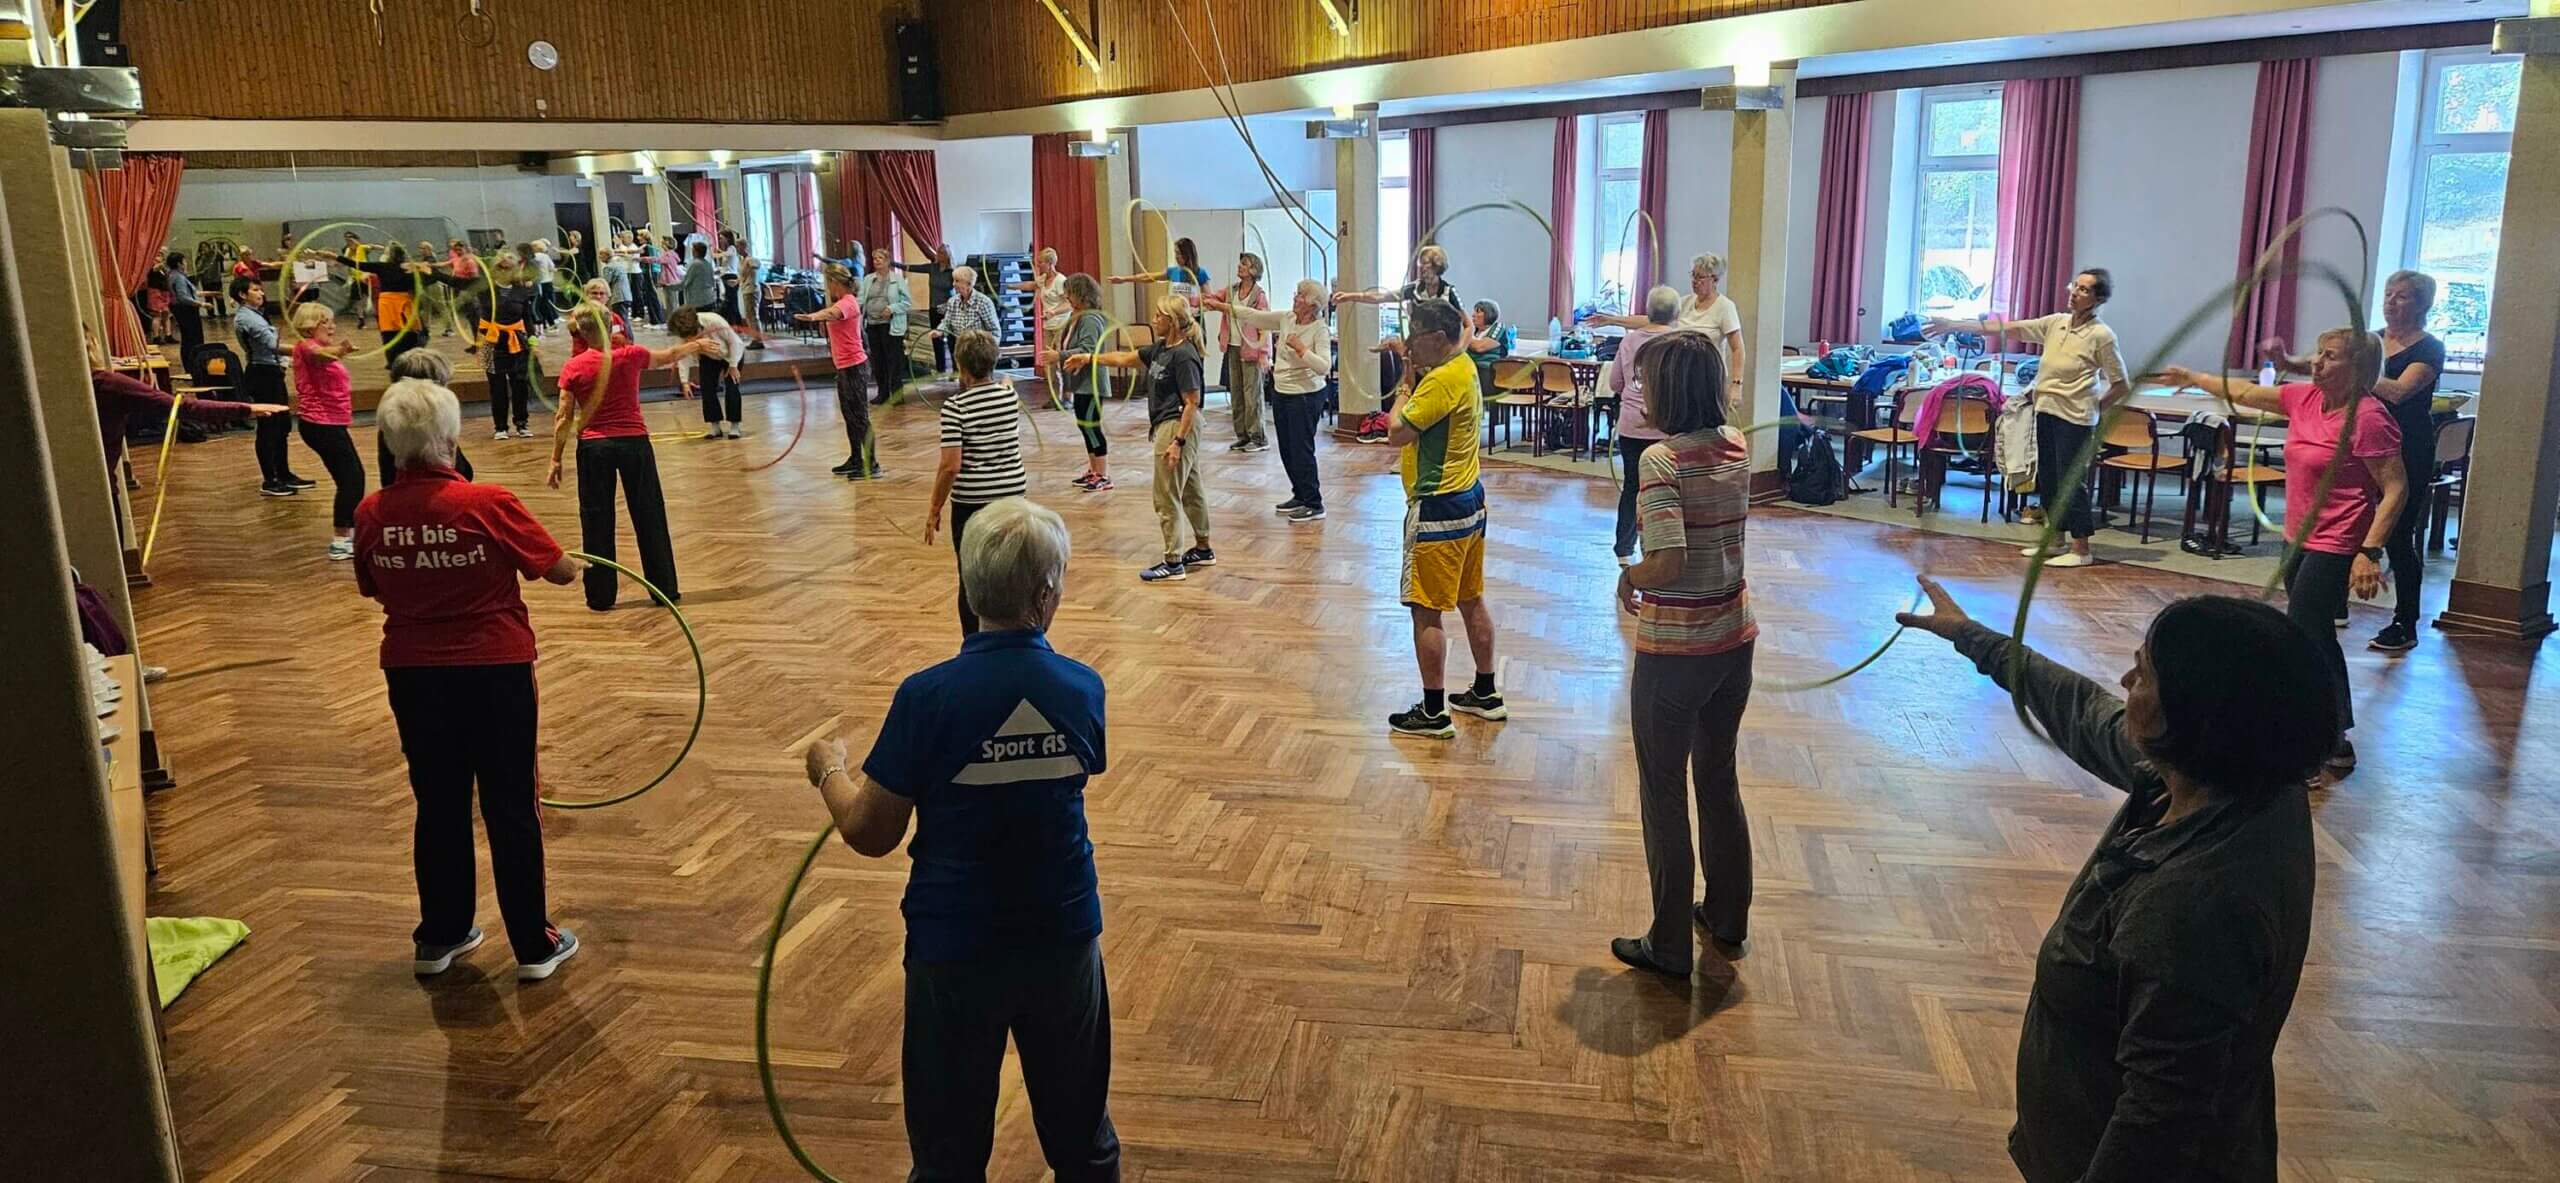 Workshop-Einheit beim Neugrabenr Event mit dem Reifen. Teilnehmenden stehen im Raum verteilt und halten den Gymnastikreifen vor sich.